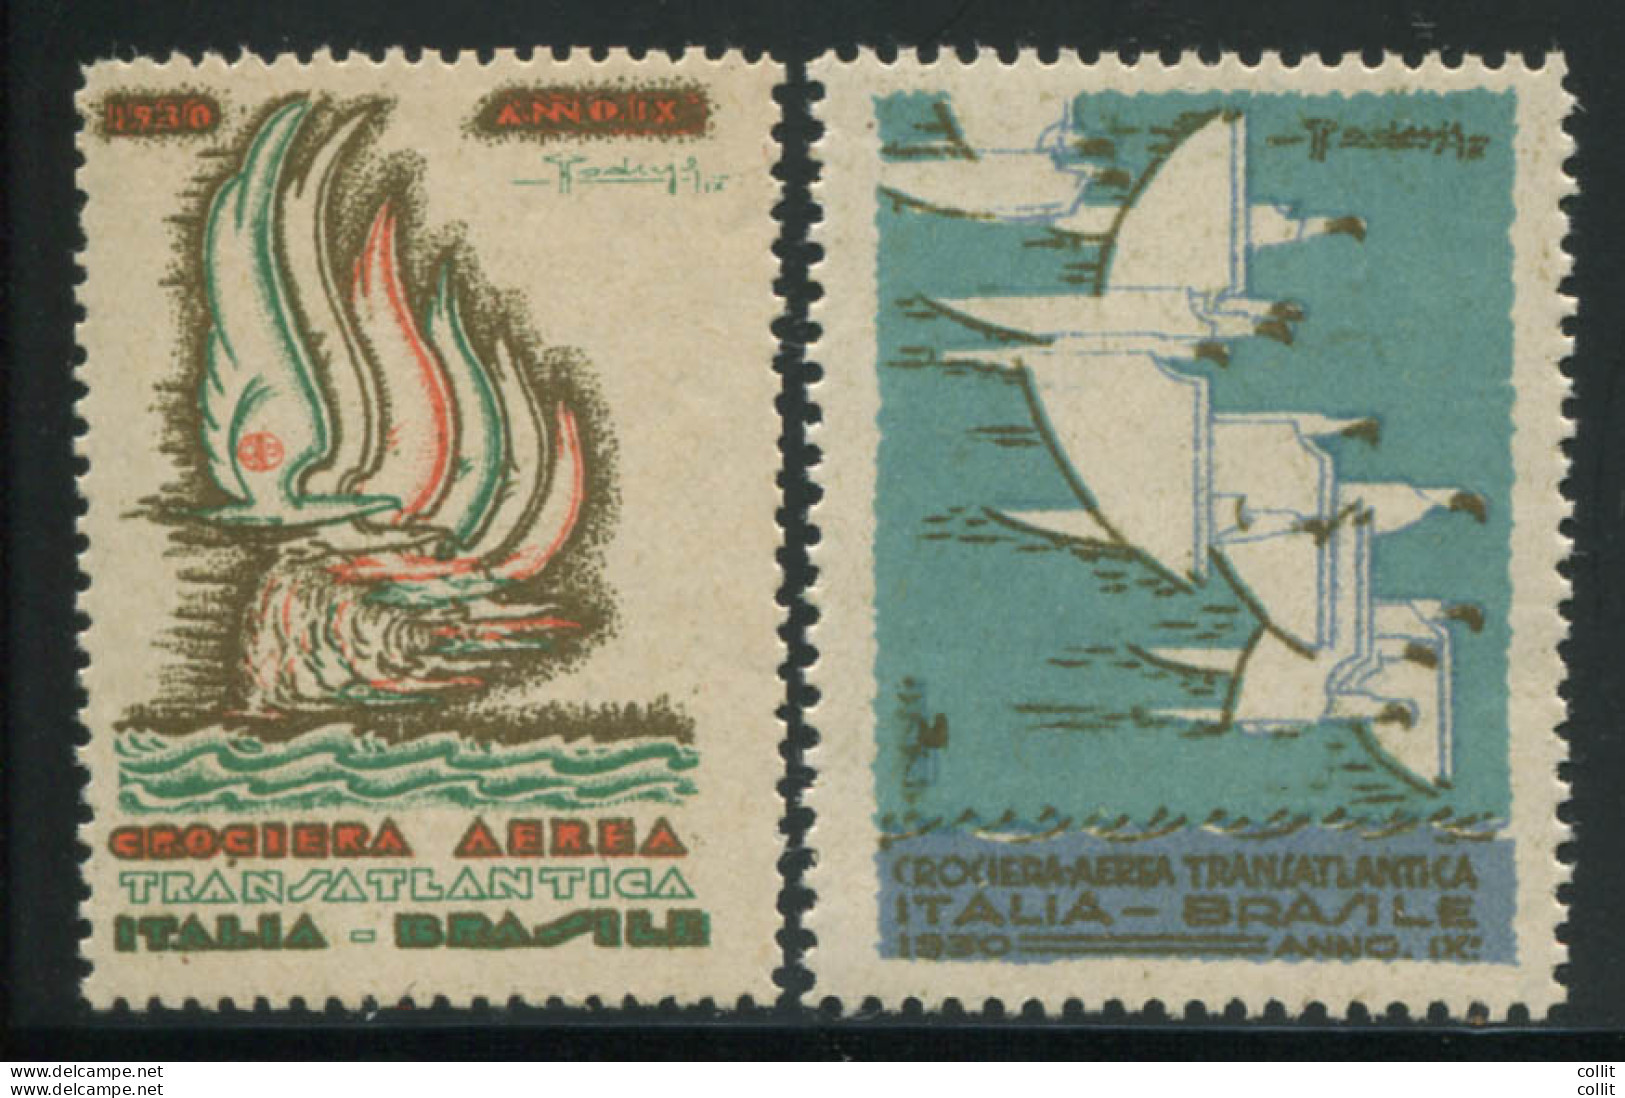 1930 Crociera Aerea Transatlantica - I Due Erinnofili Commemorativi - Balbo - Marcofilía (Aviones)